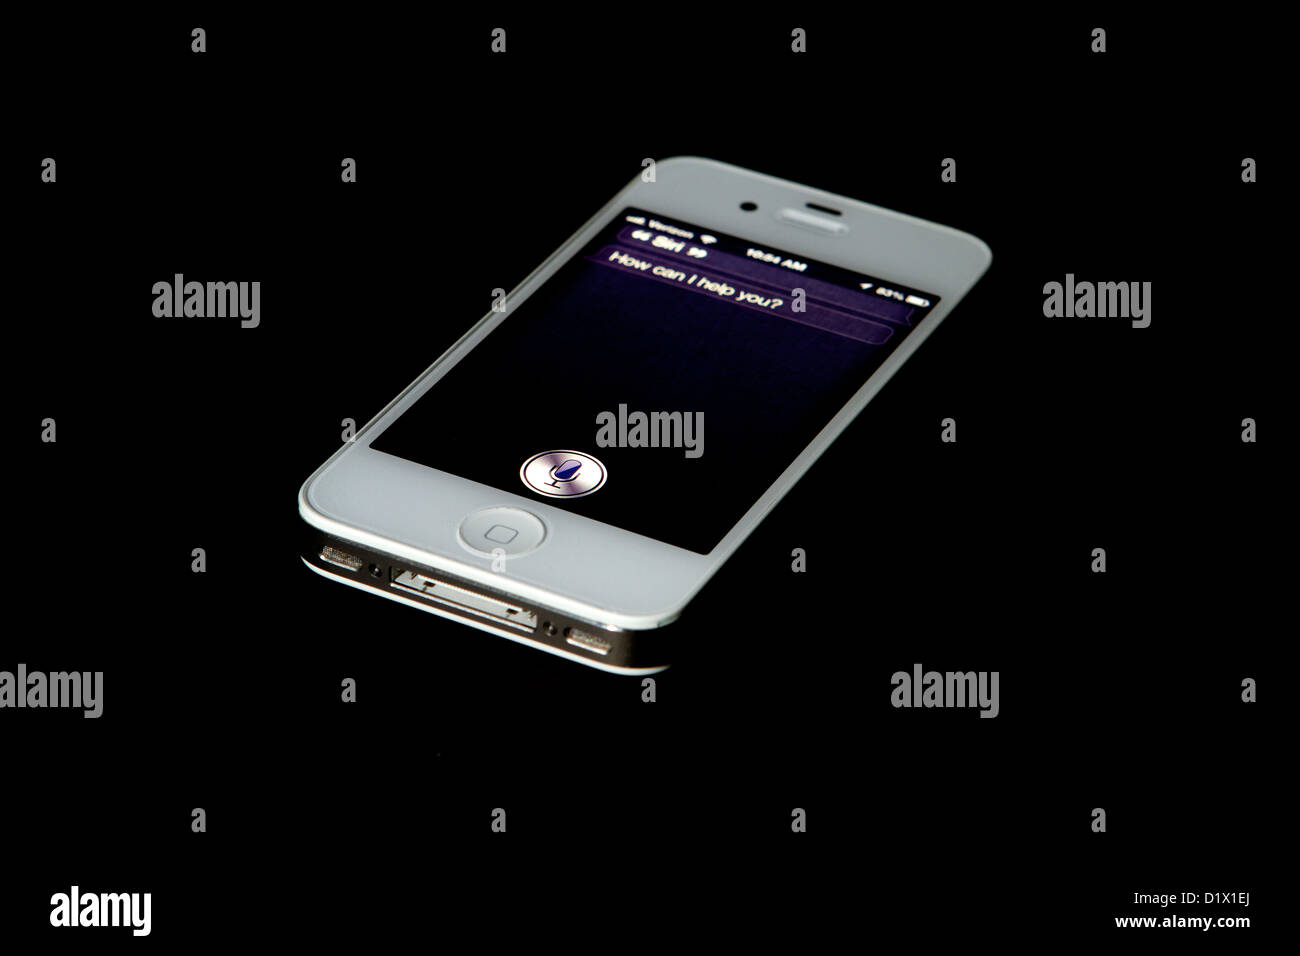 Un Iphone 4S bianco su uno sfondo nero che mostra le app Skype chiedendo "Come posso aiutarla" Foto Stock